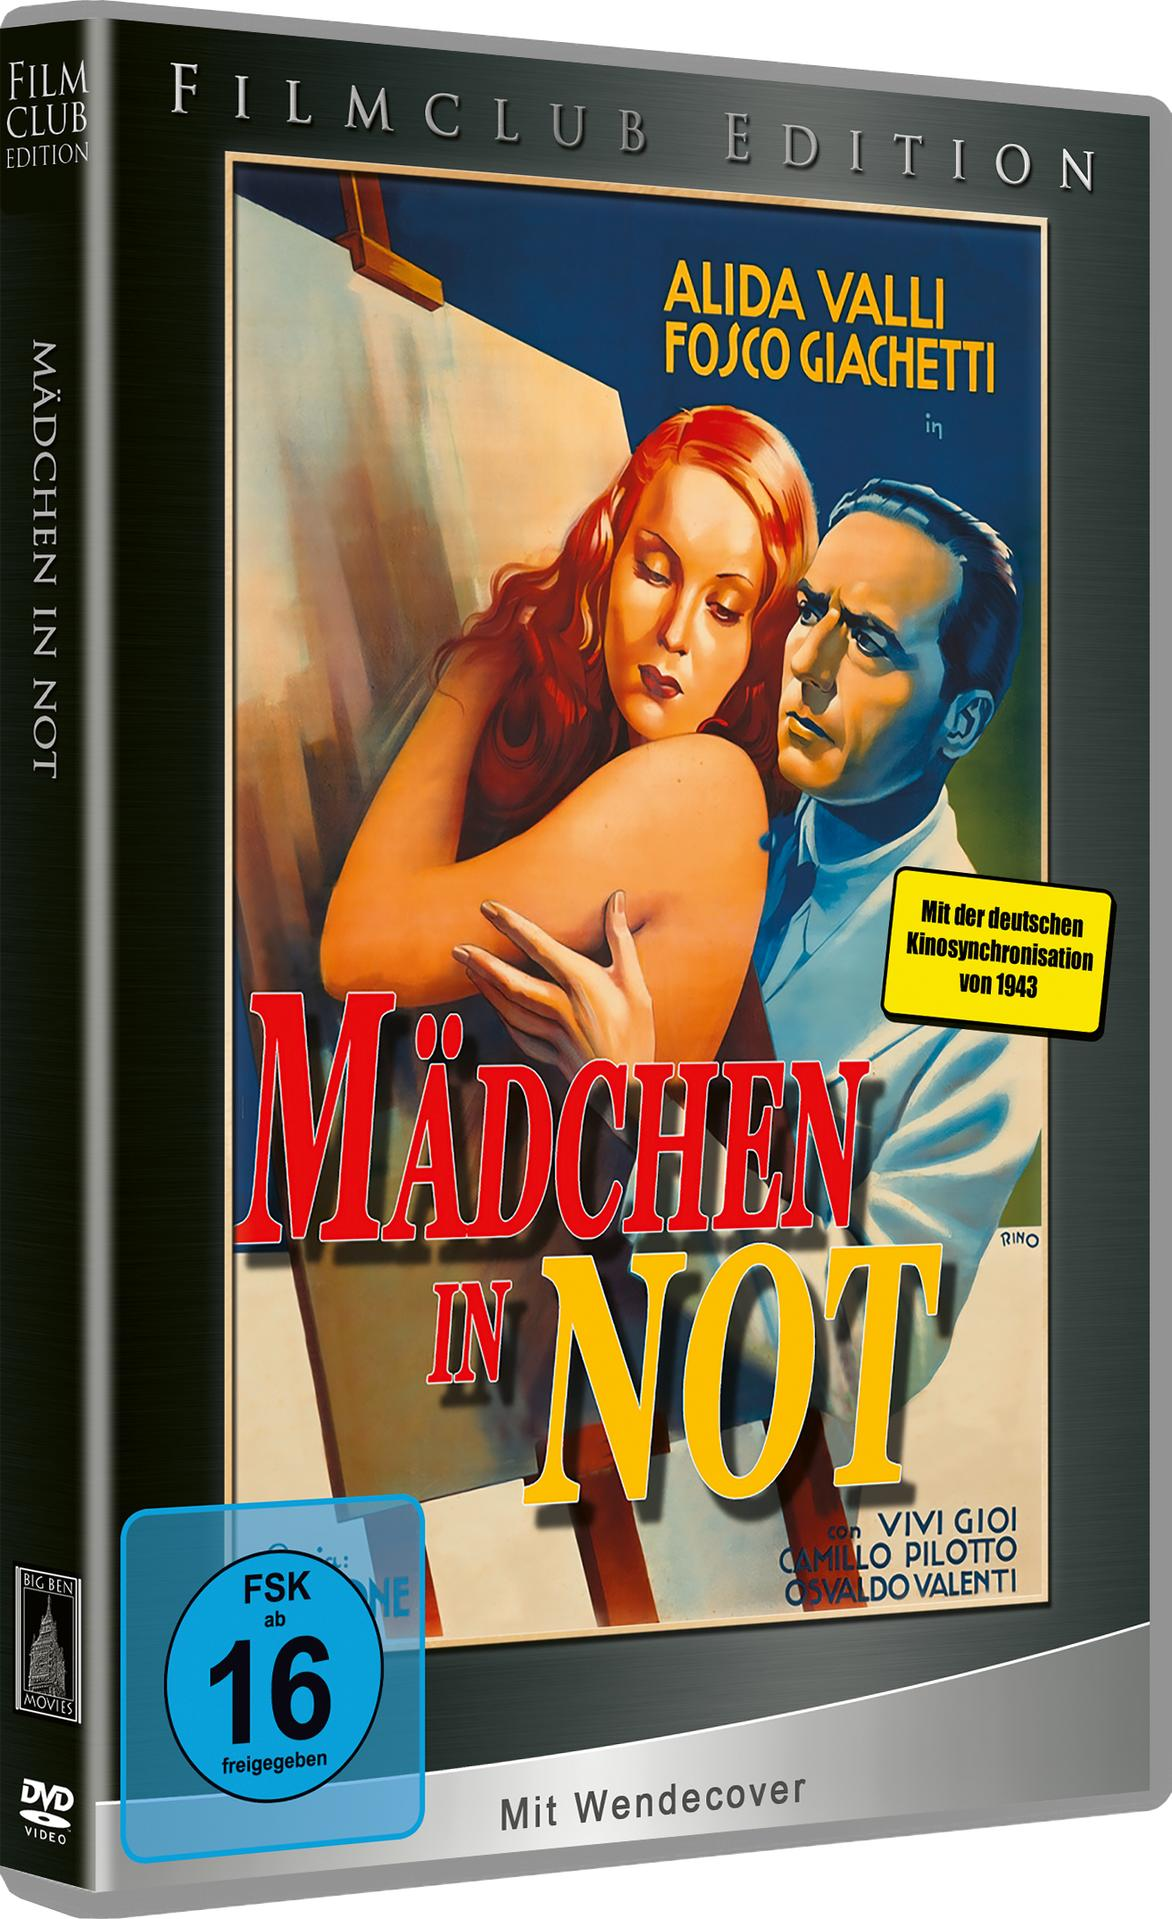 Not DVD in Mädchen